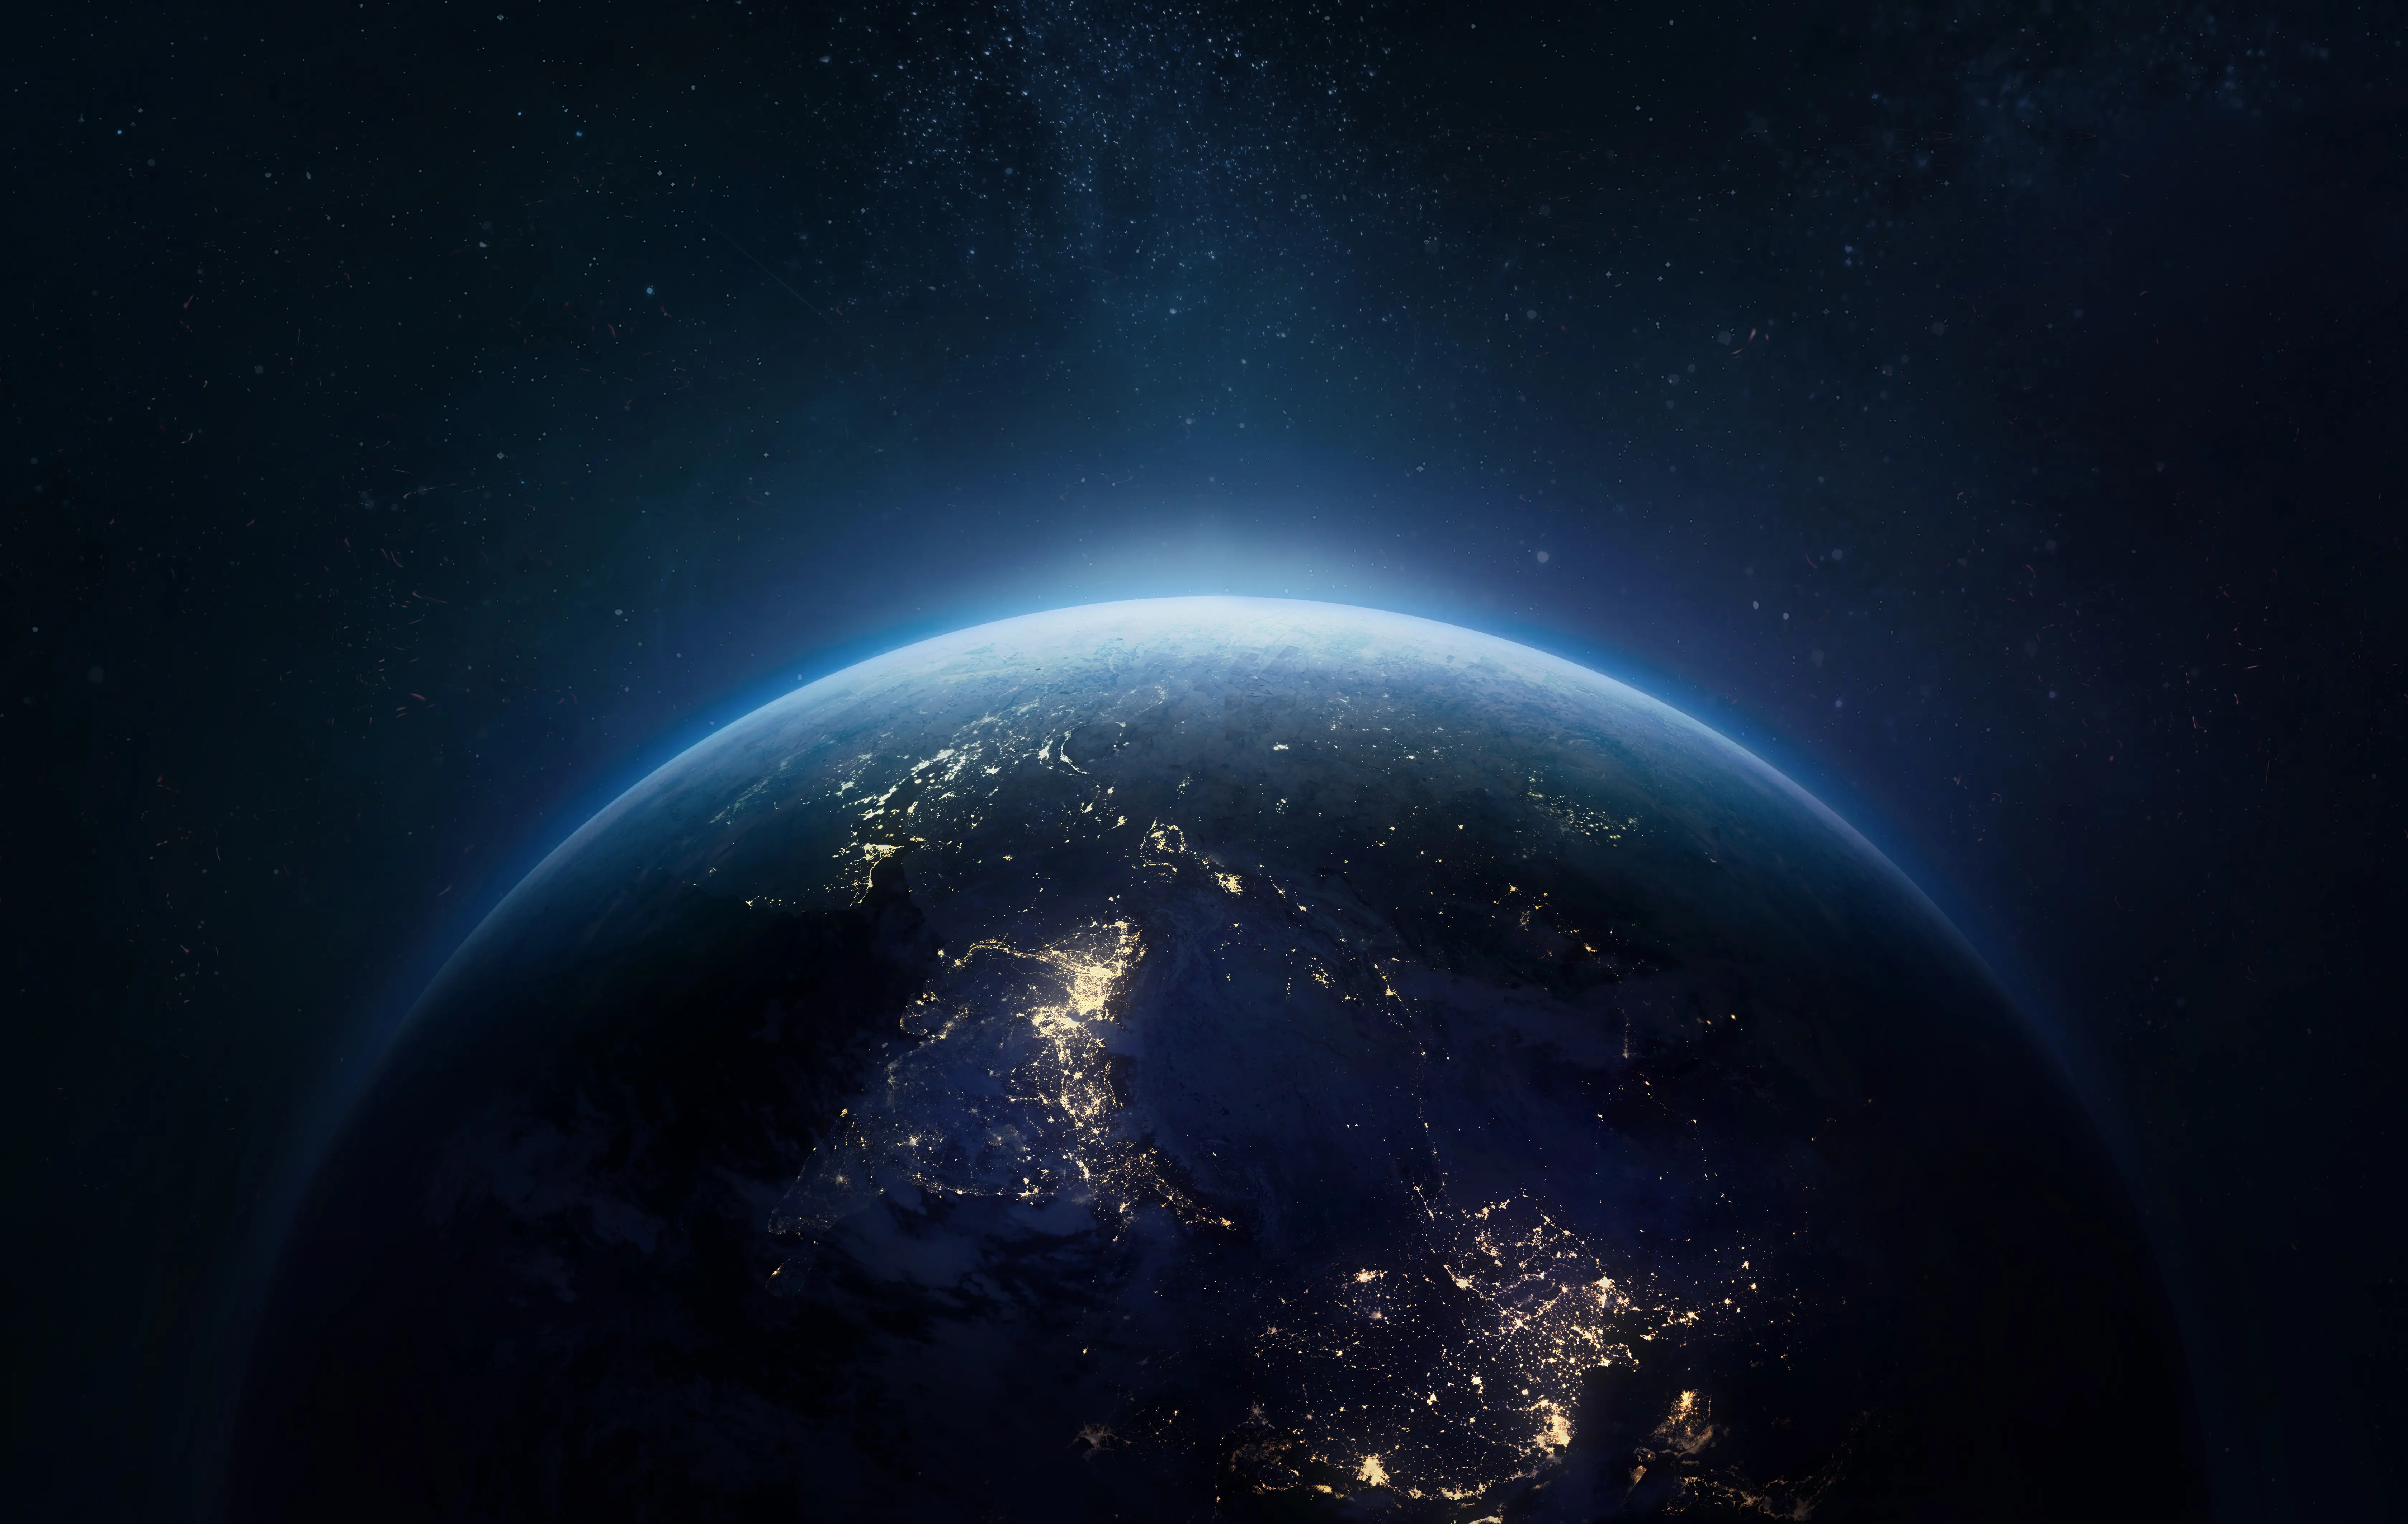 Vista nocturna de la Tierra desde el espacio exterior con luces de ciudades en la superficie del planeta